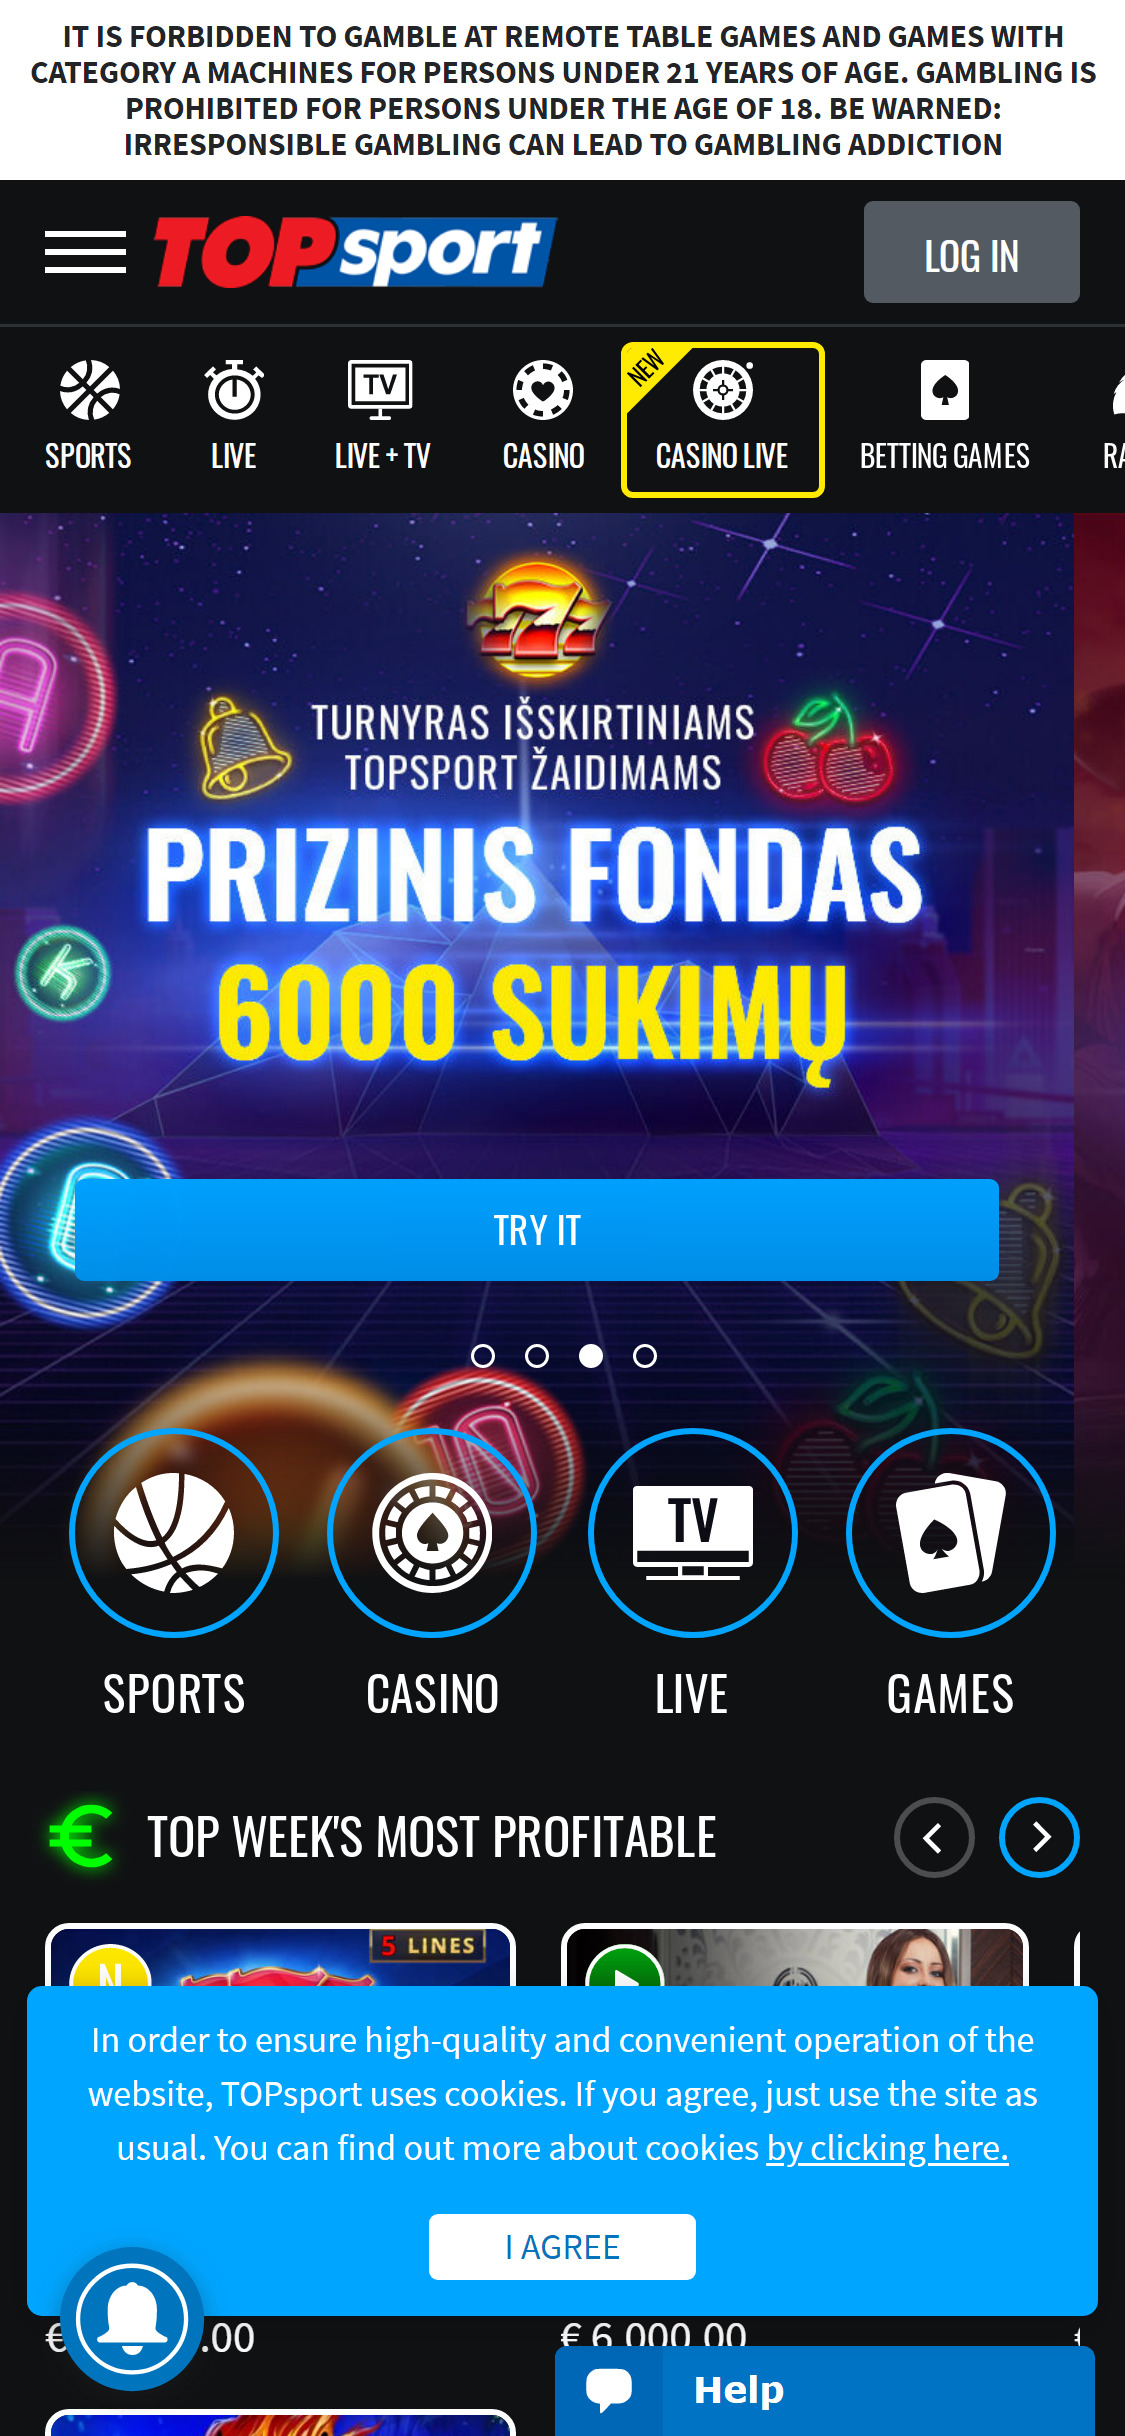 Top Sport Casino Latvia Mobile Review